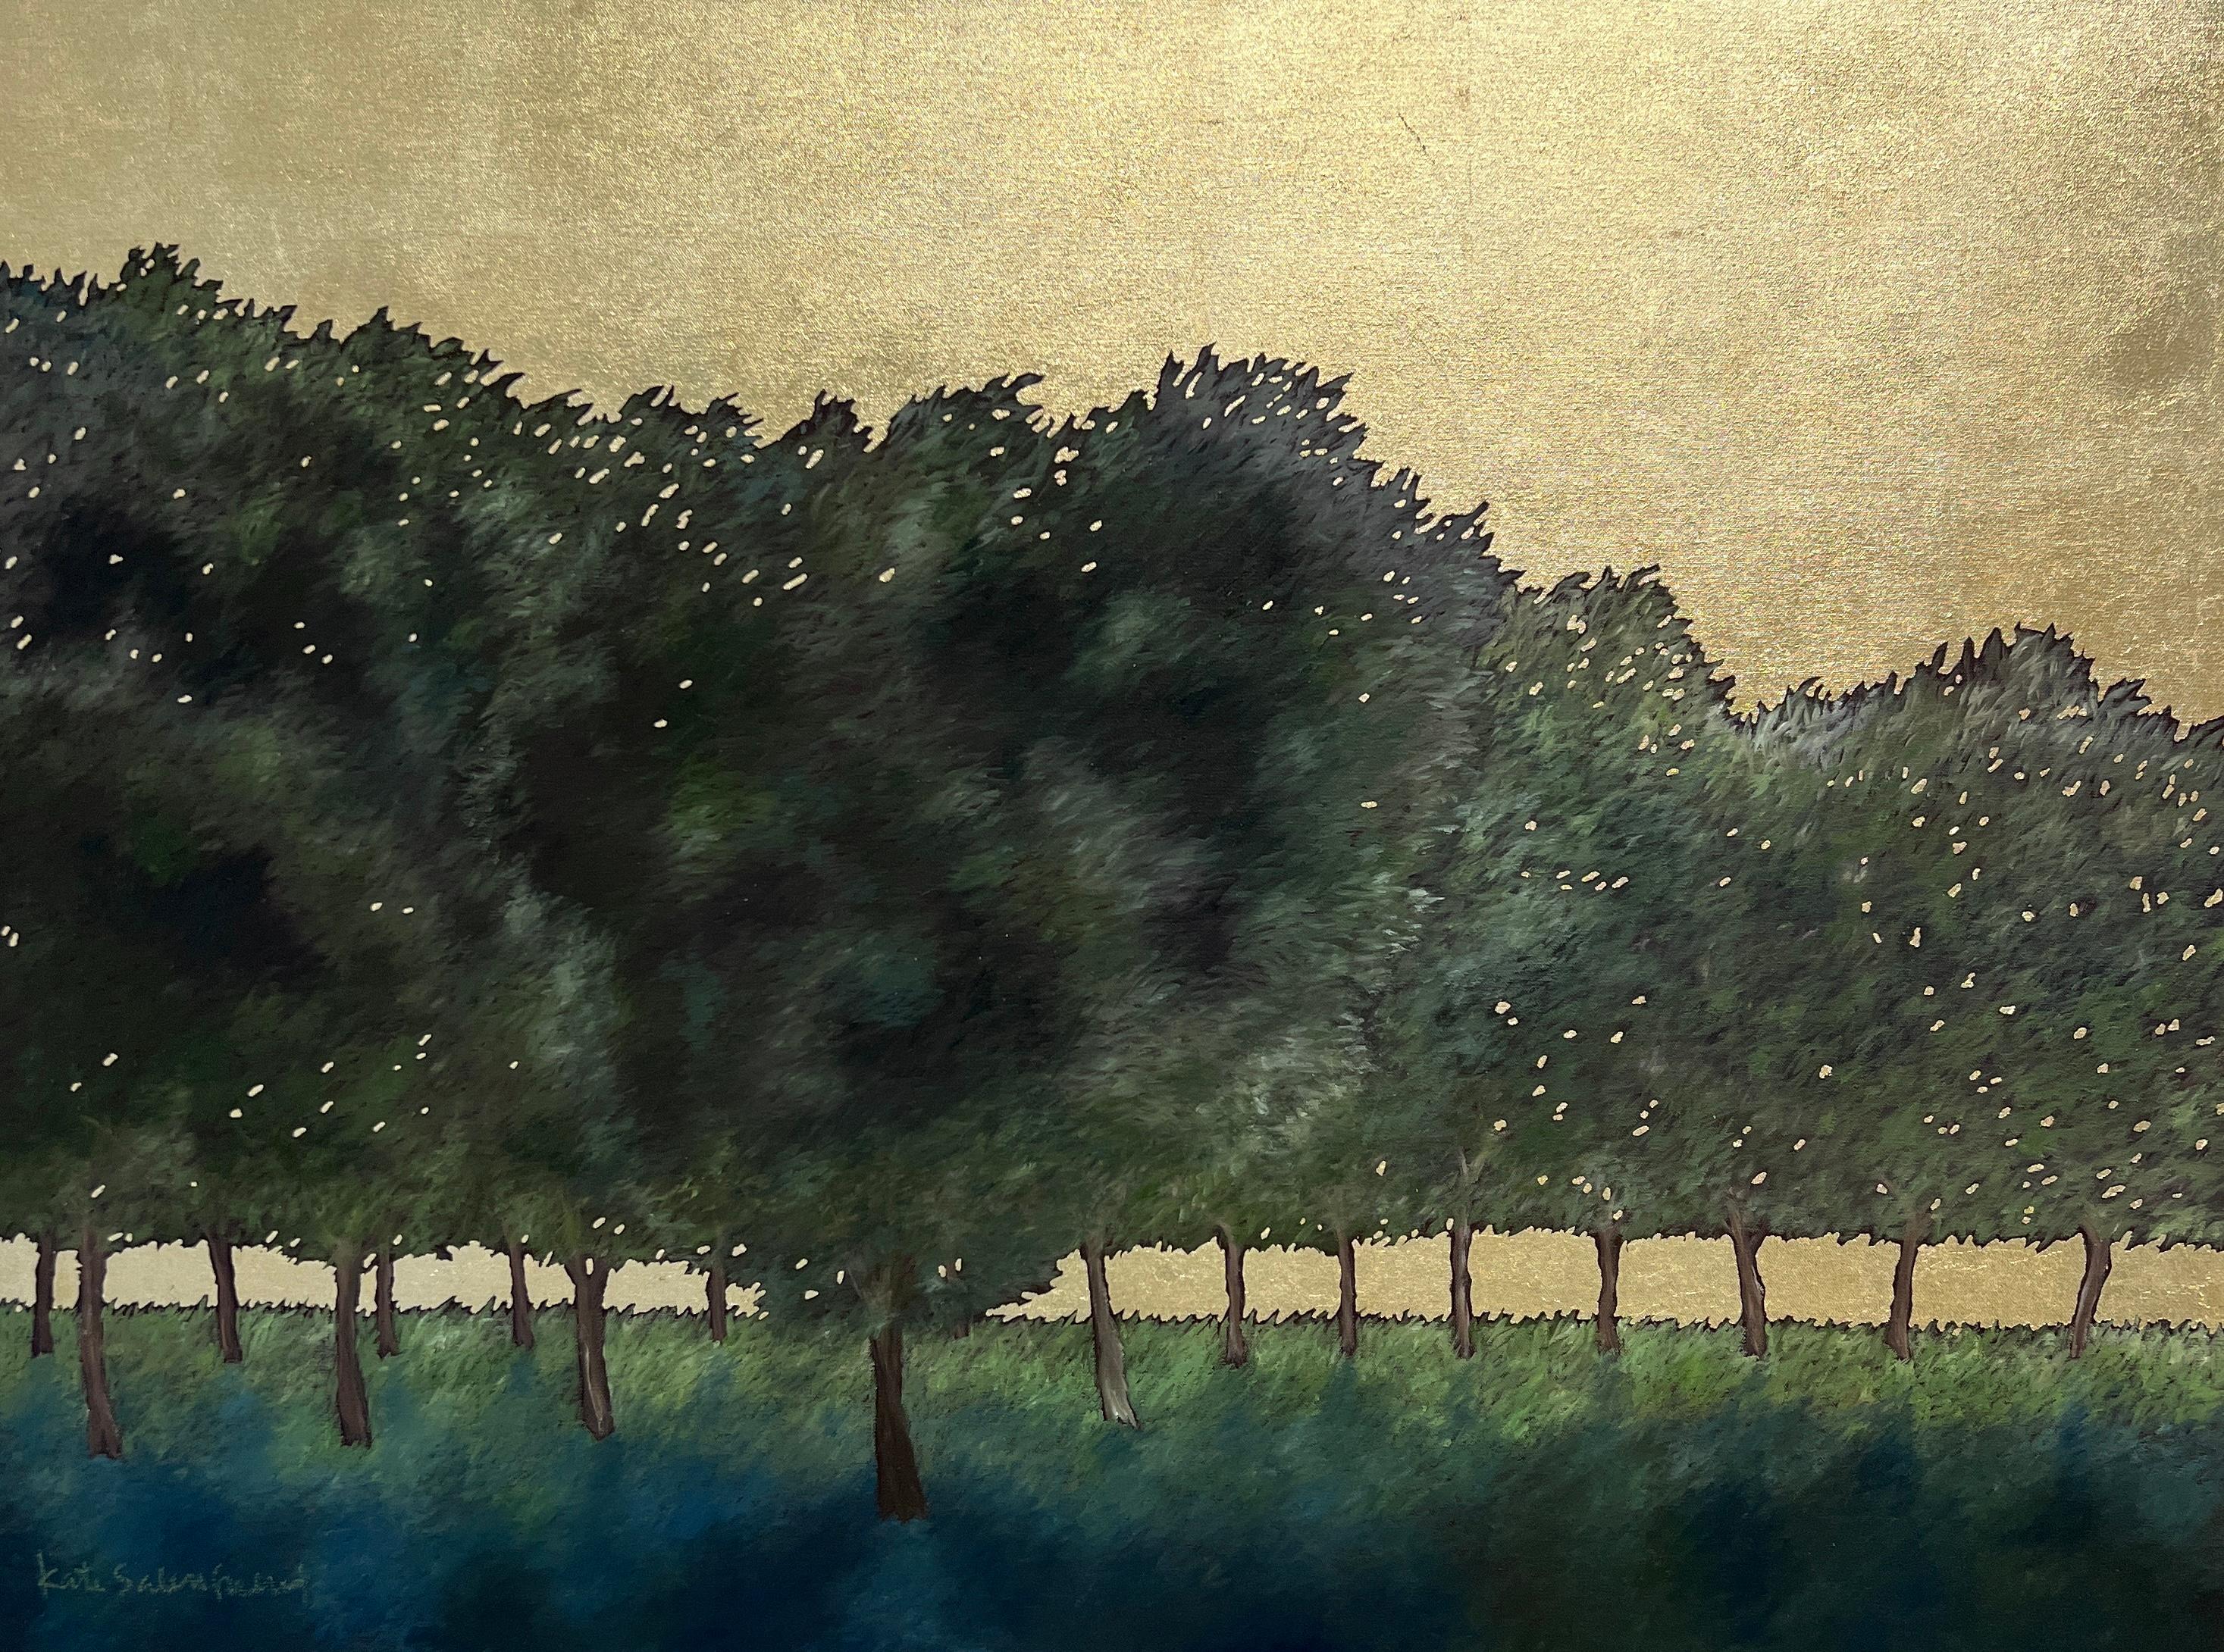 Kate Salenfriend Landscape Painting - Olive Grove 4872